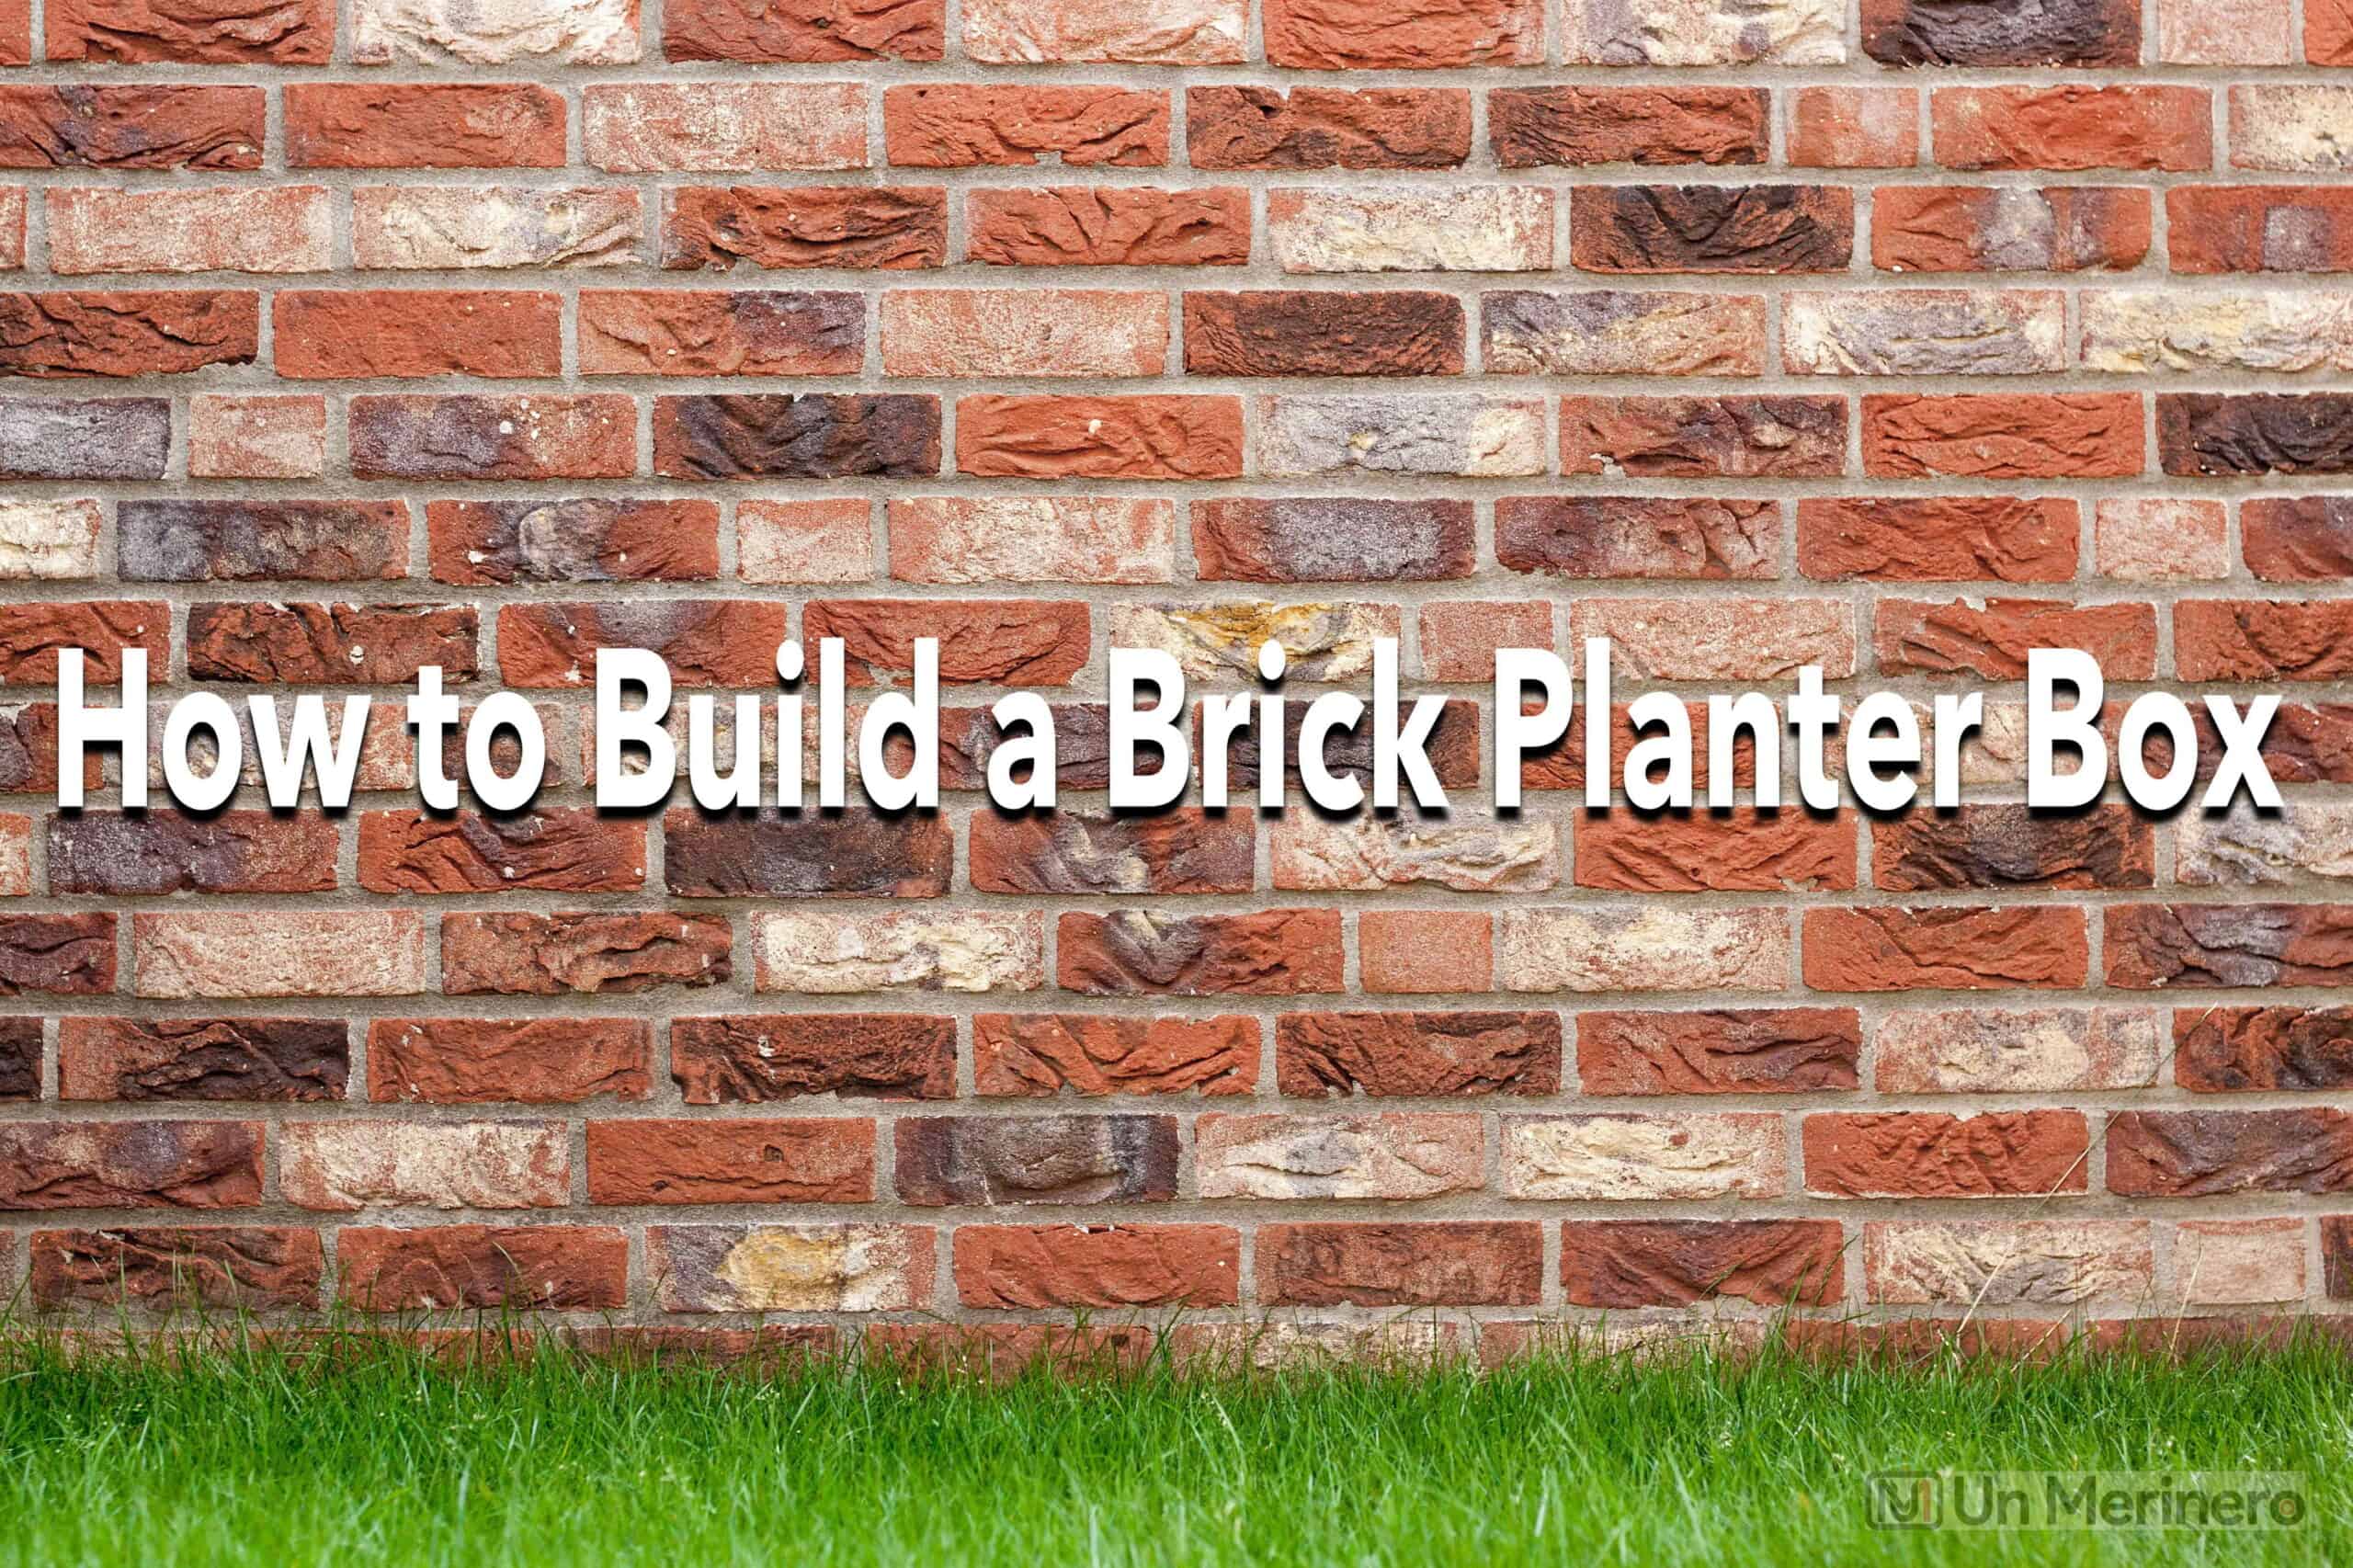 How to Build a Brick Planter Box